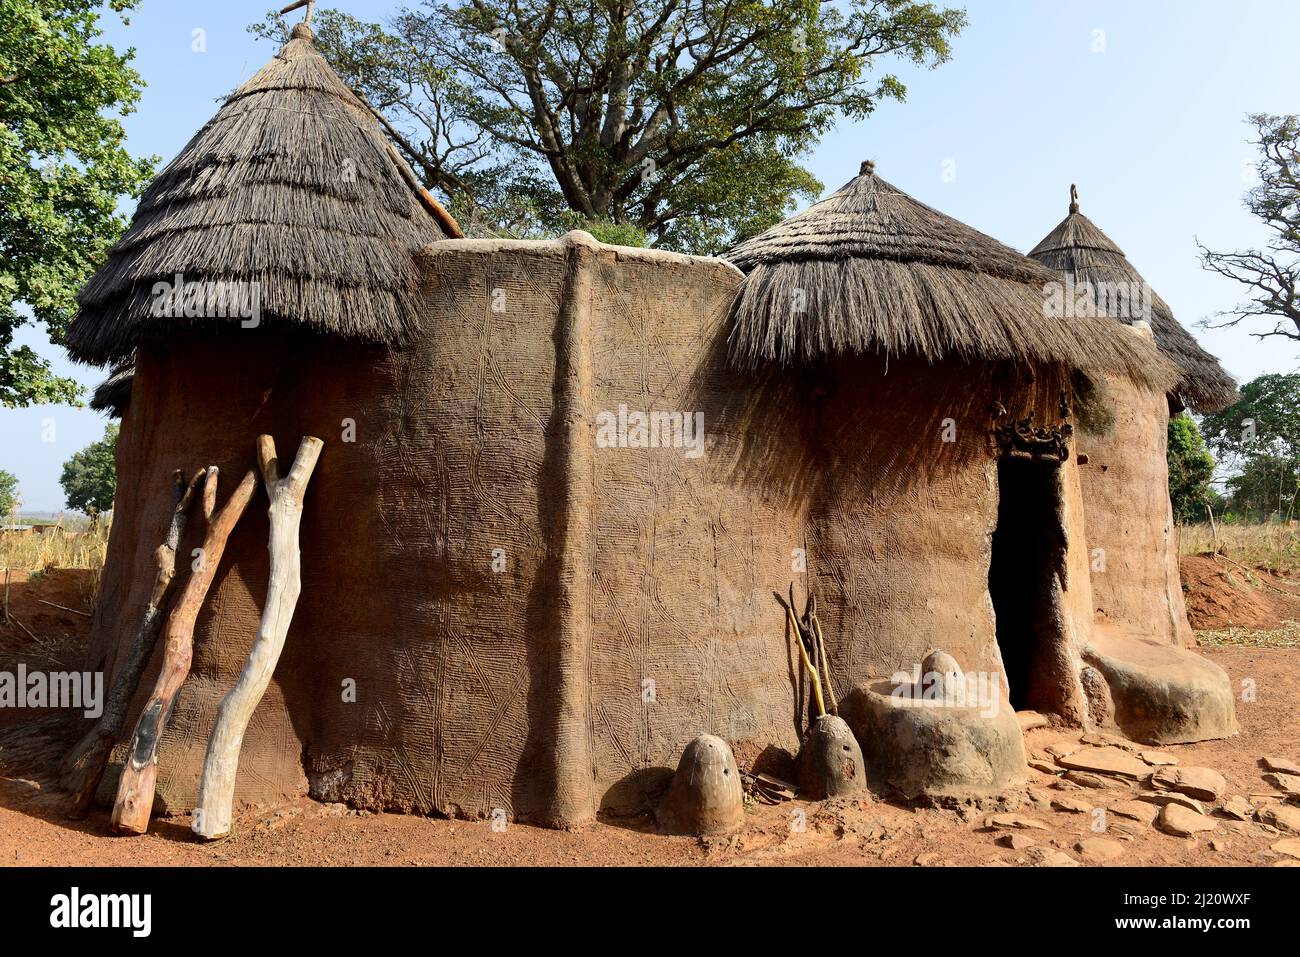 Les maisons traditionnelles du groupe ethnique Somba, comme les petits châteaux unifamiliaux, sont construites en argile. Terre des Batammariba, Bénin, 2020. Banque D'Images